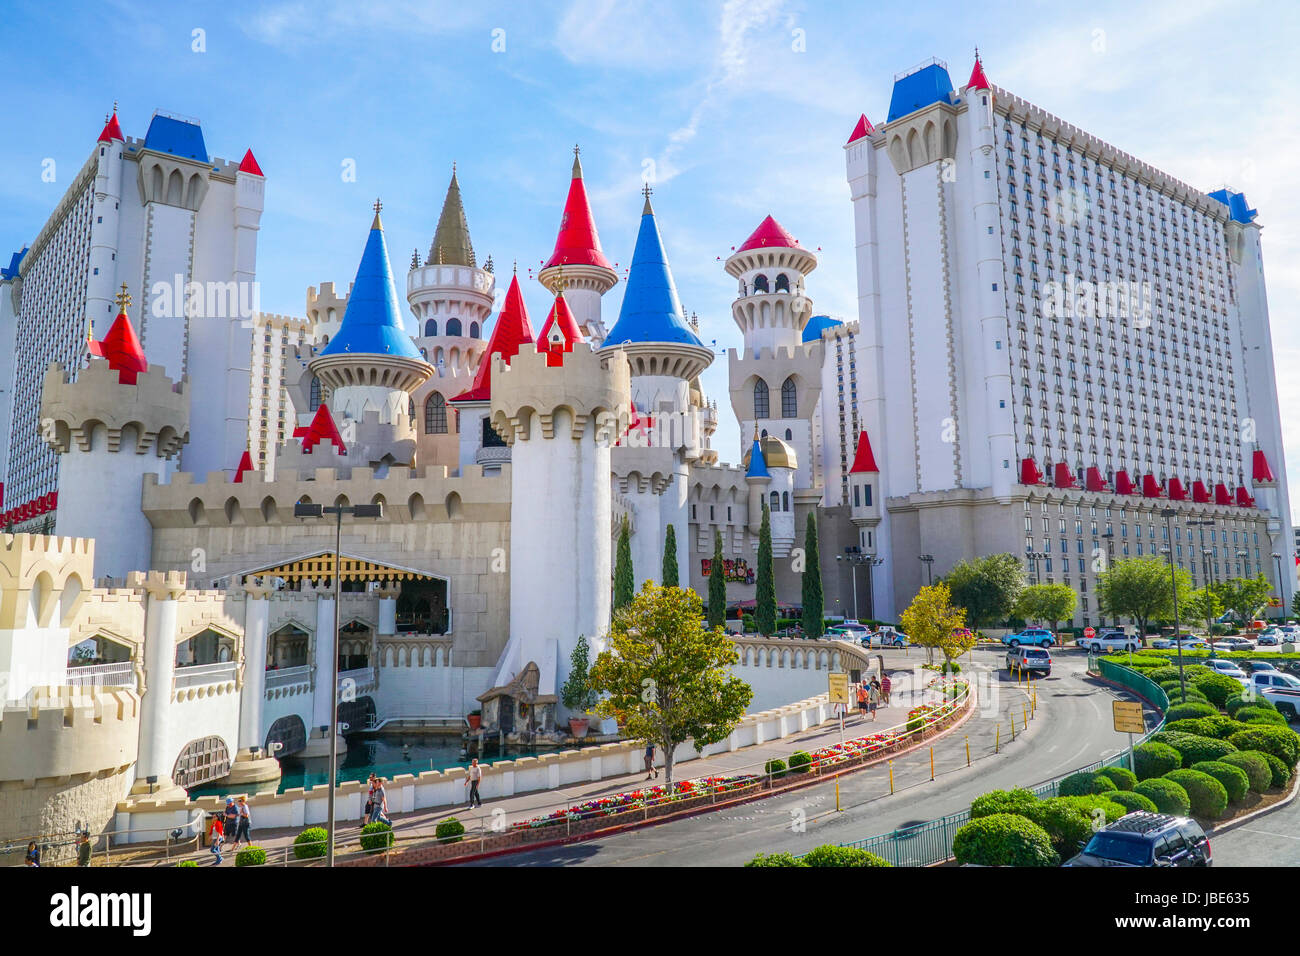 Excalibur Hotel in Las Vegas - LAS VEGAS - NEVADA Stock Photo